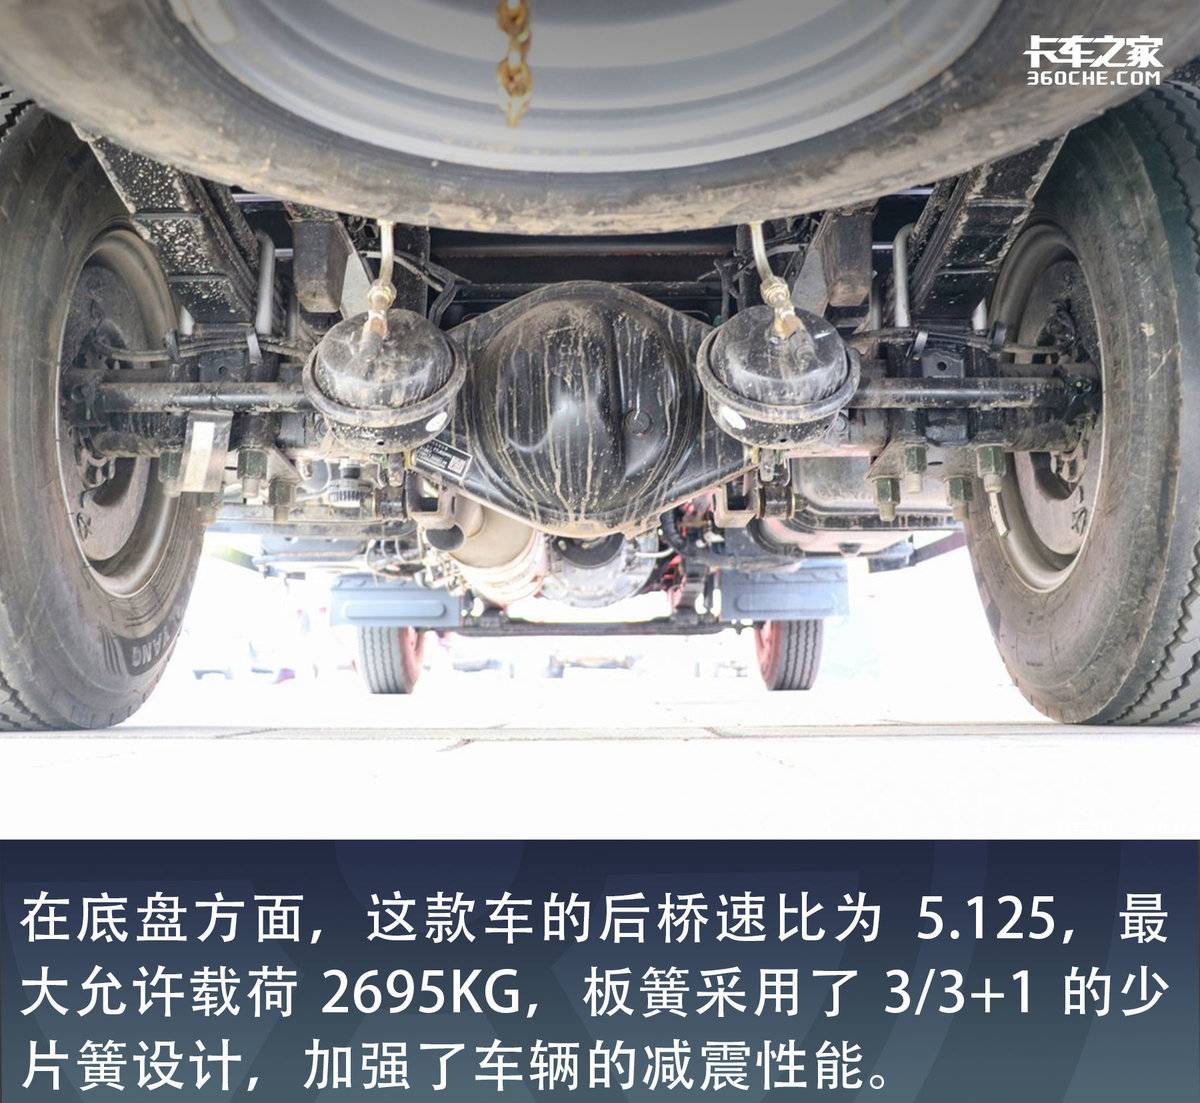 自重仅1.8吨 可选装气囊座椅  欧马可S1打造高端轻卡的标杆车型